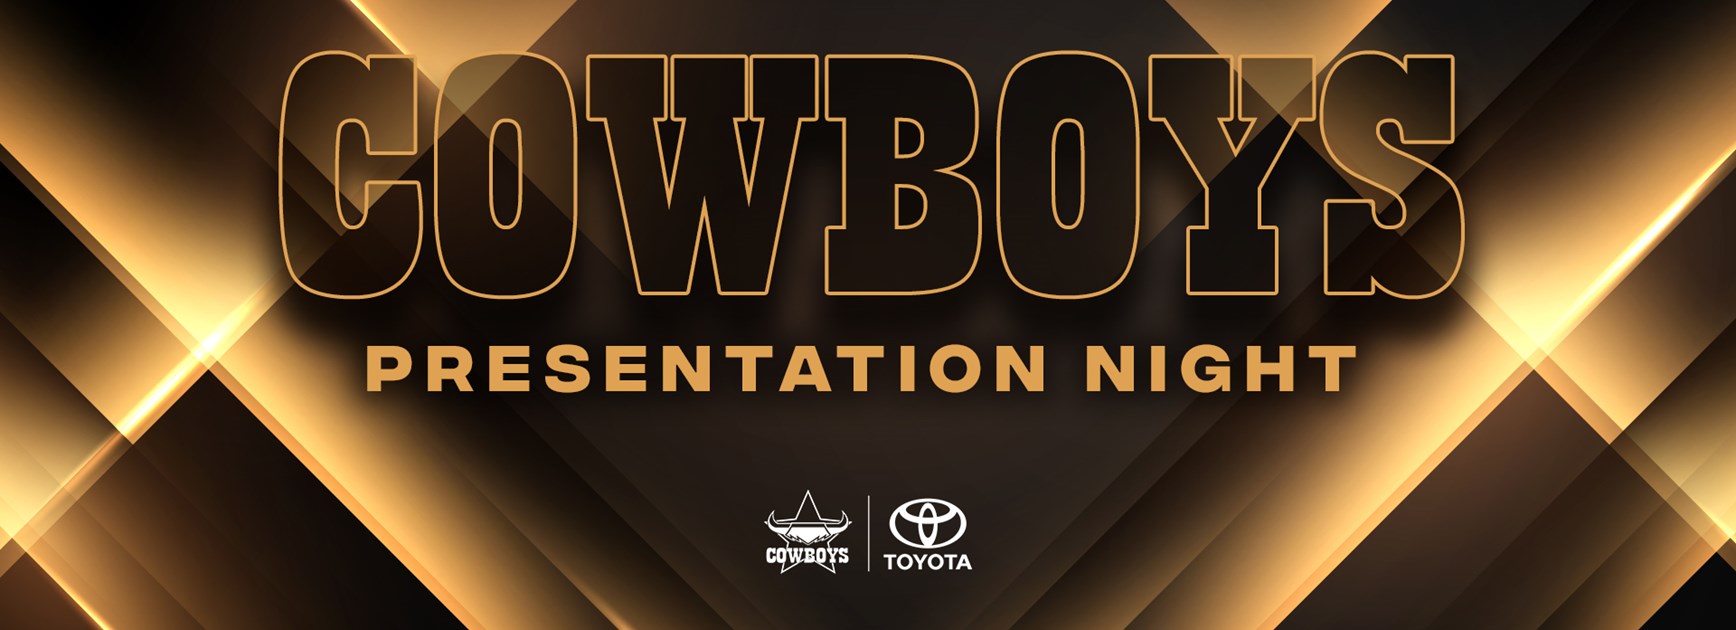 cowboys presentation night 2022